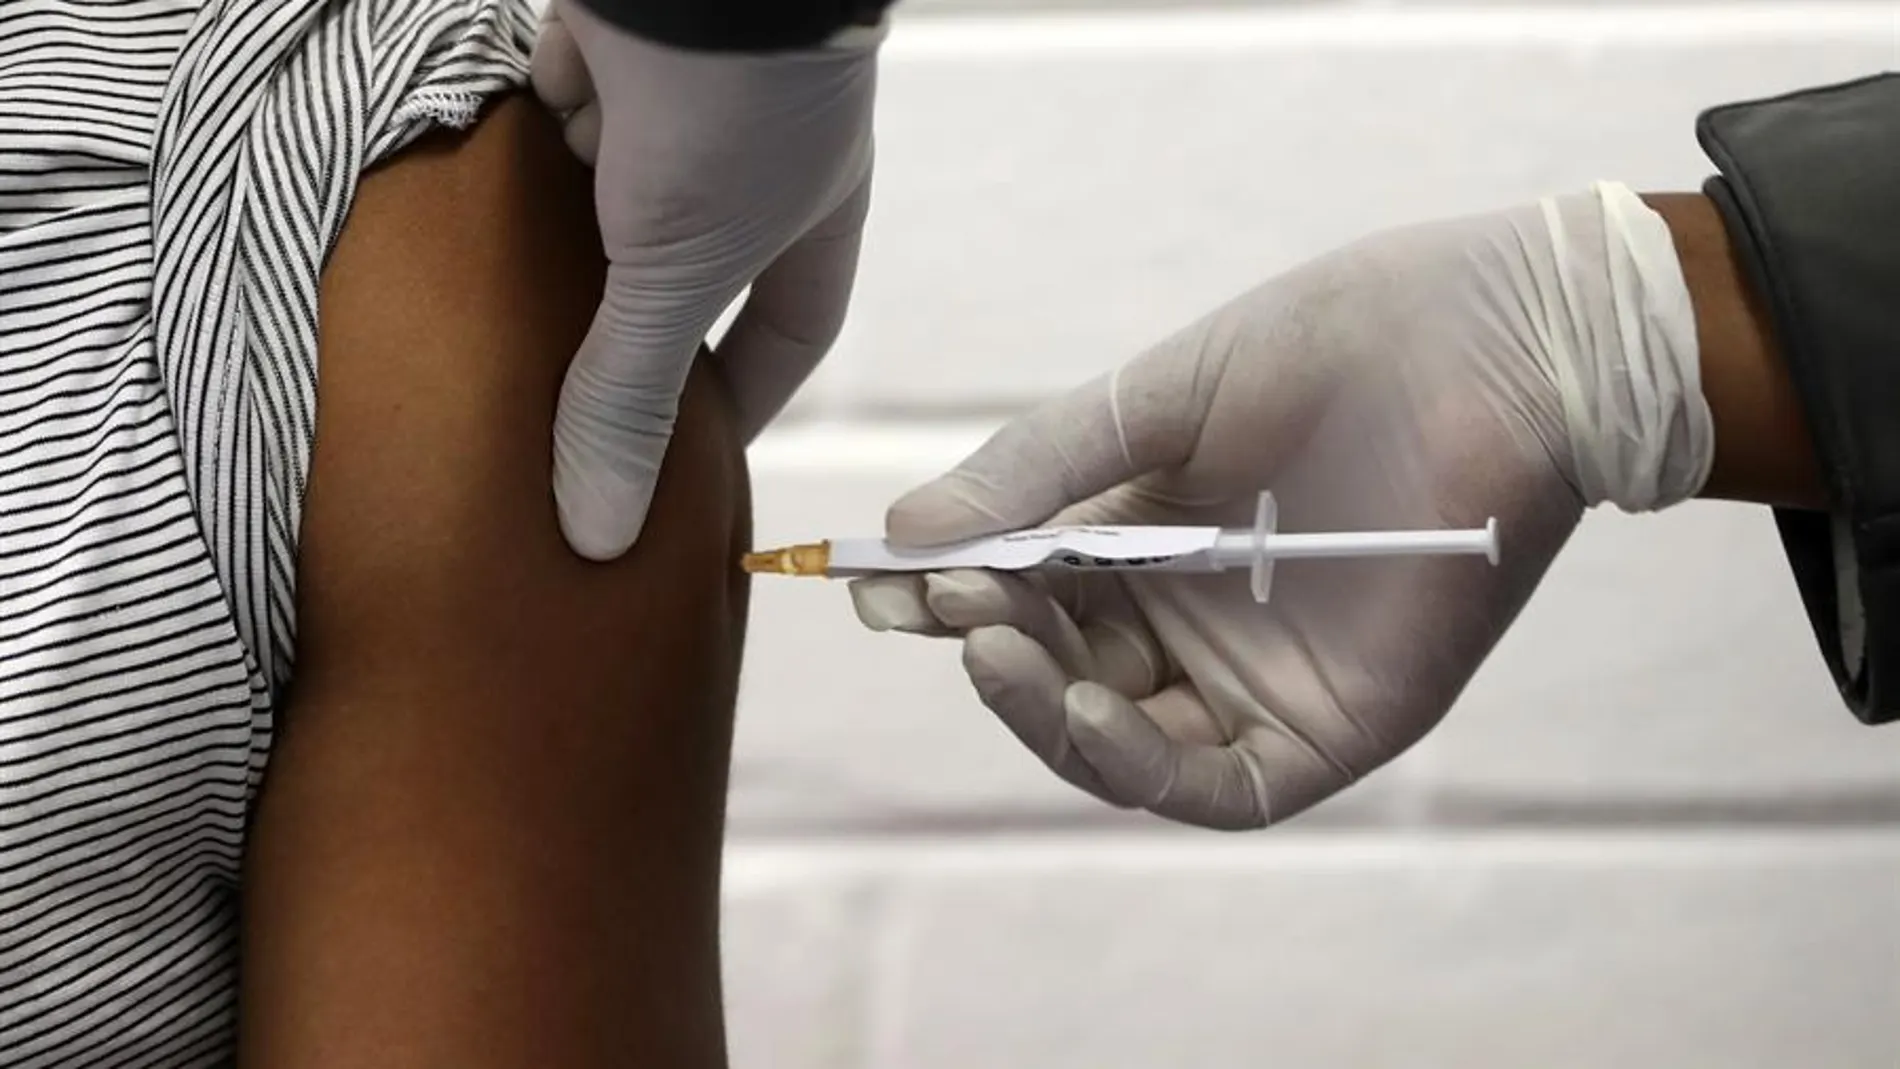 Moderna asegura que su vacuna contra el coronavirus "induce una robusta respuesta inmunológica" en primates